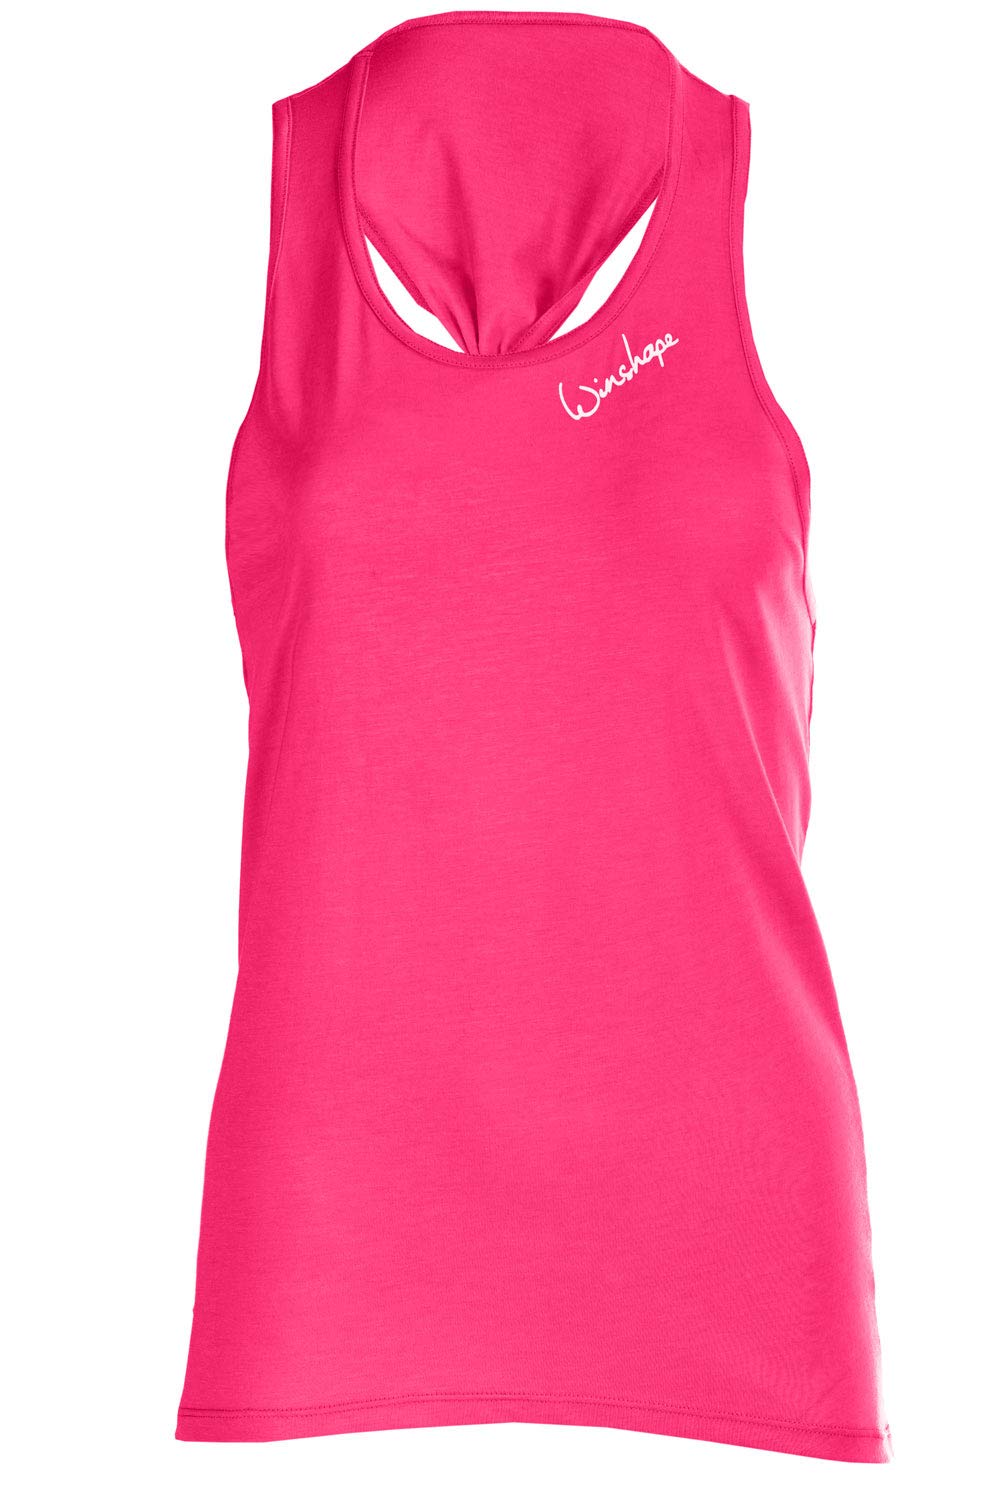 Winshape Damen Damen Ultra Leichtes Modal-Tanktop Mct001 Dance Style, Fitness Freizeit Sport Yoga Tr gershirt Cami Shirt, Deep-pink, S EU